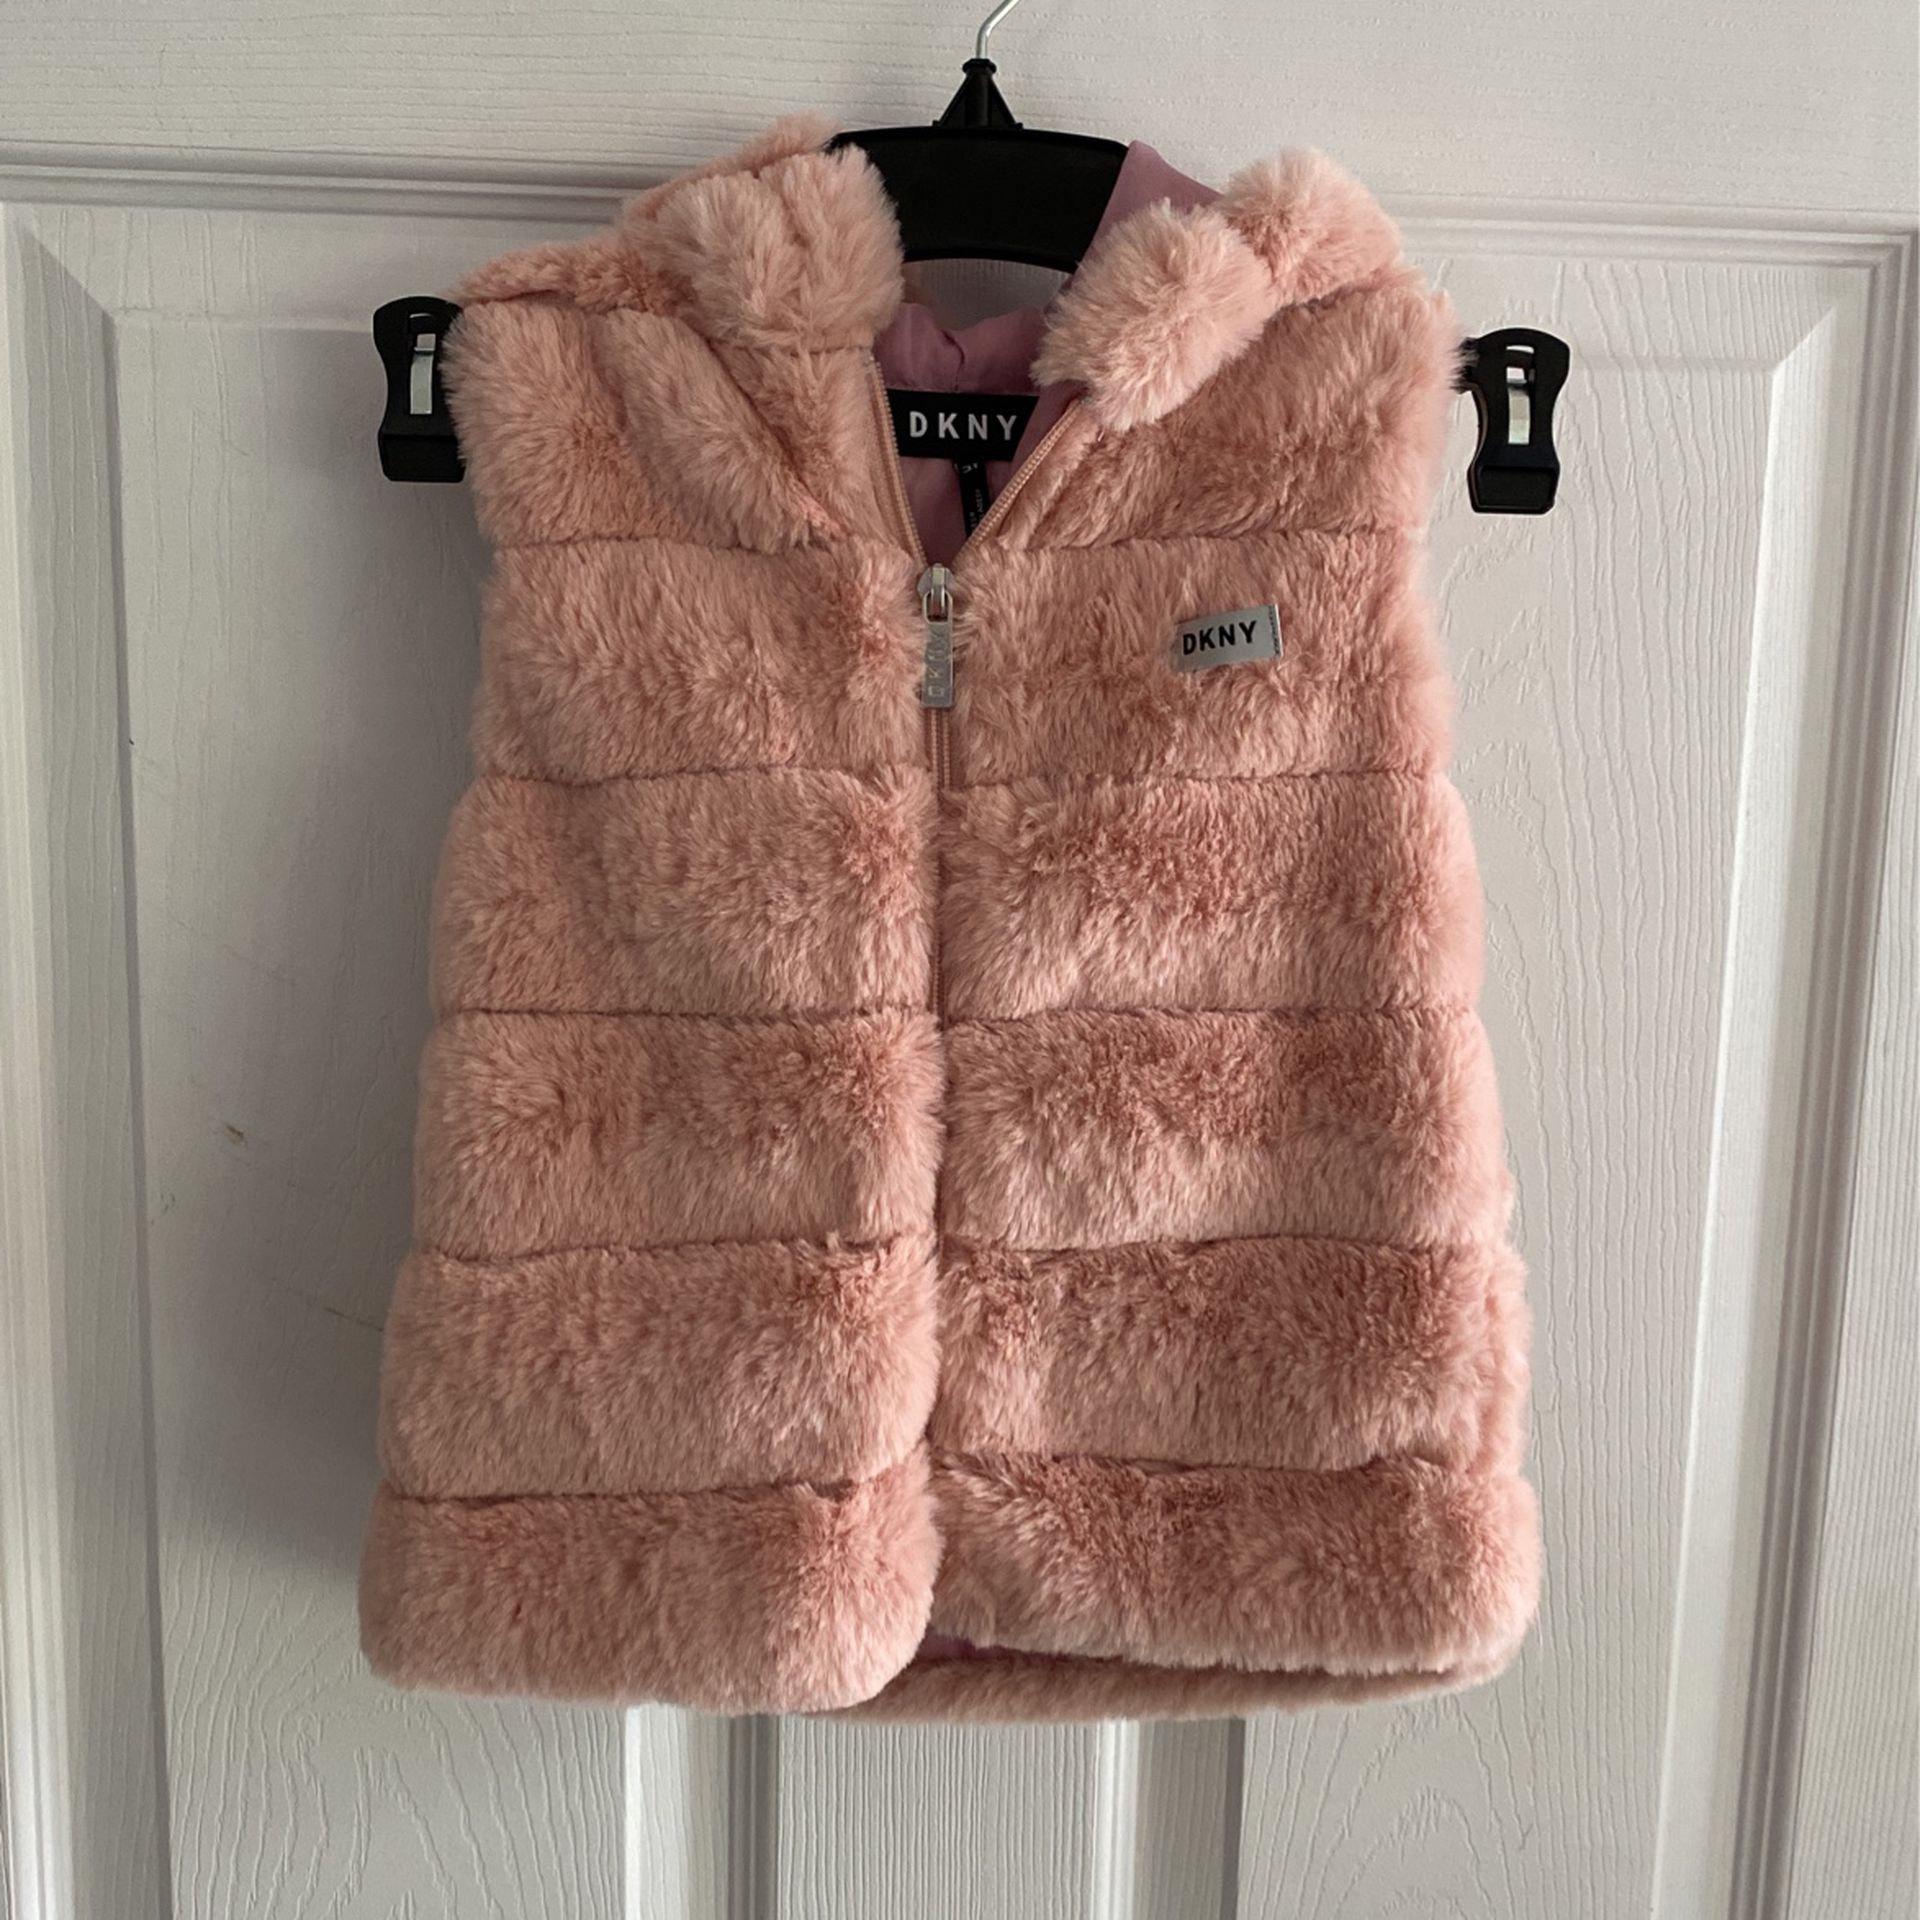 Toddler girls size 3 pink faux fur vest